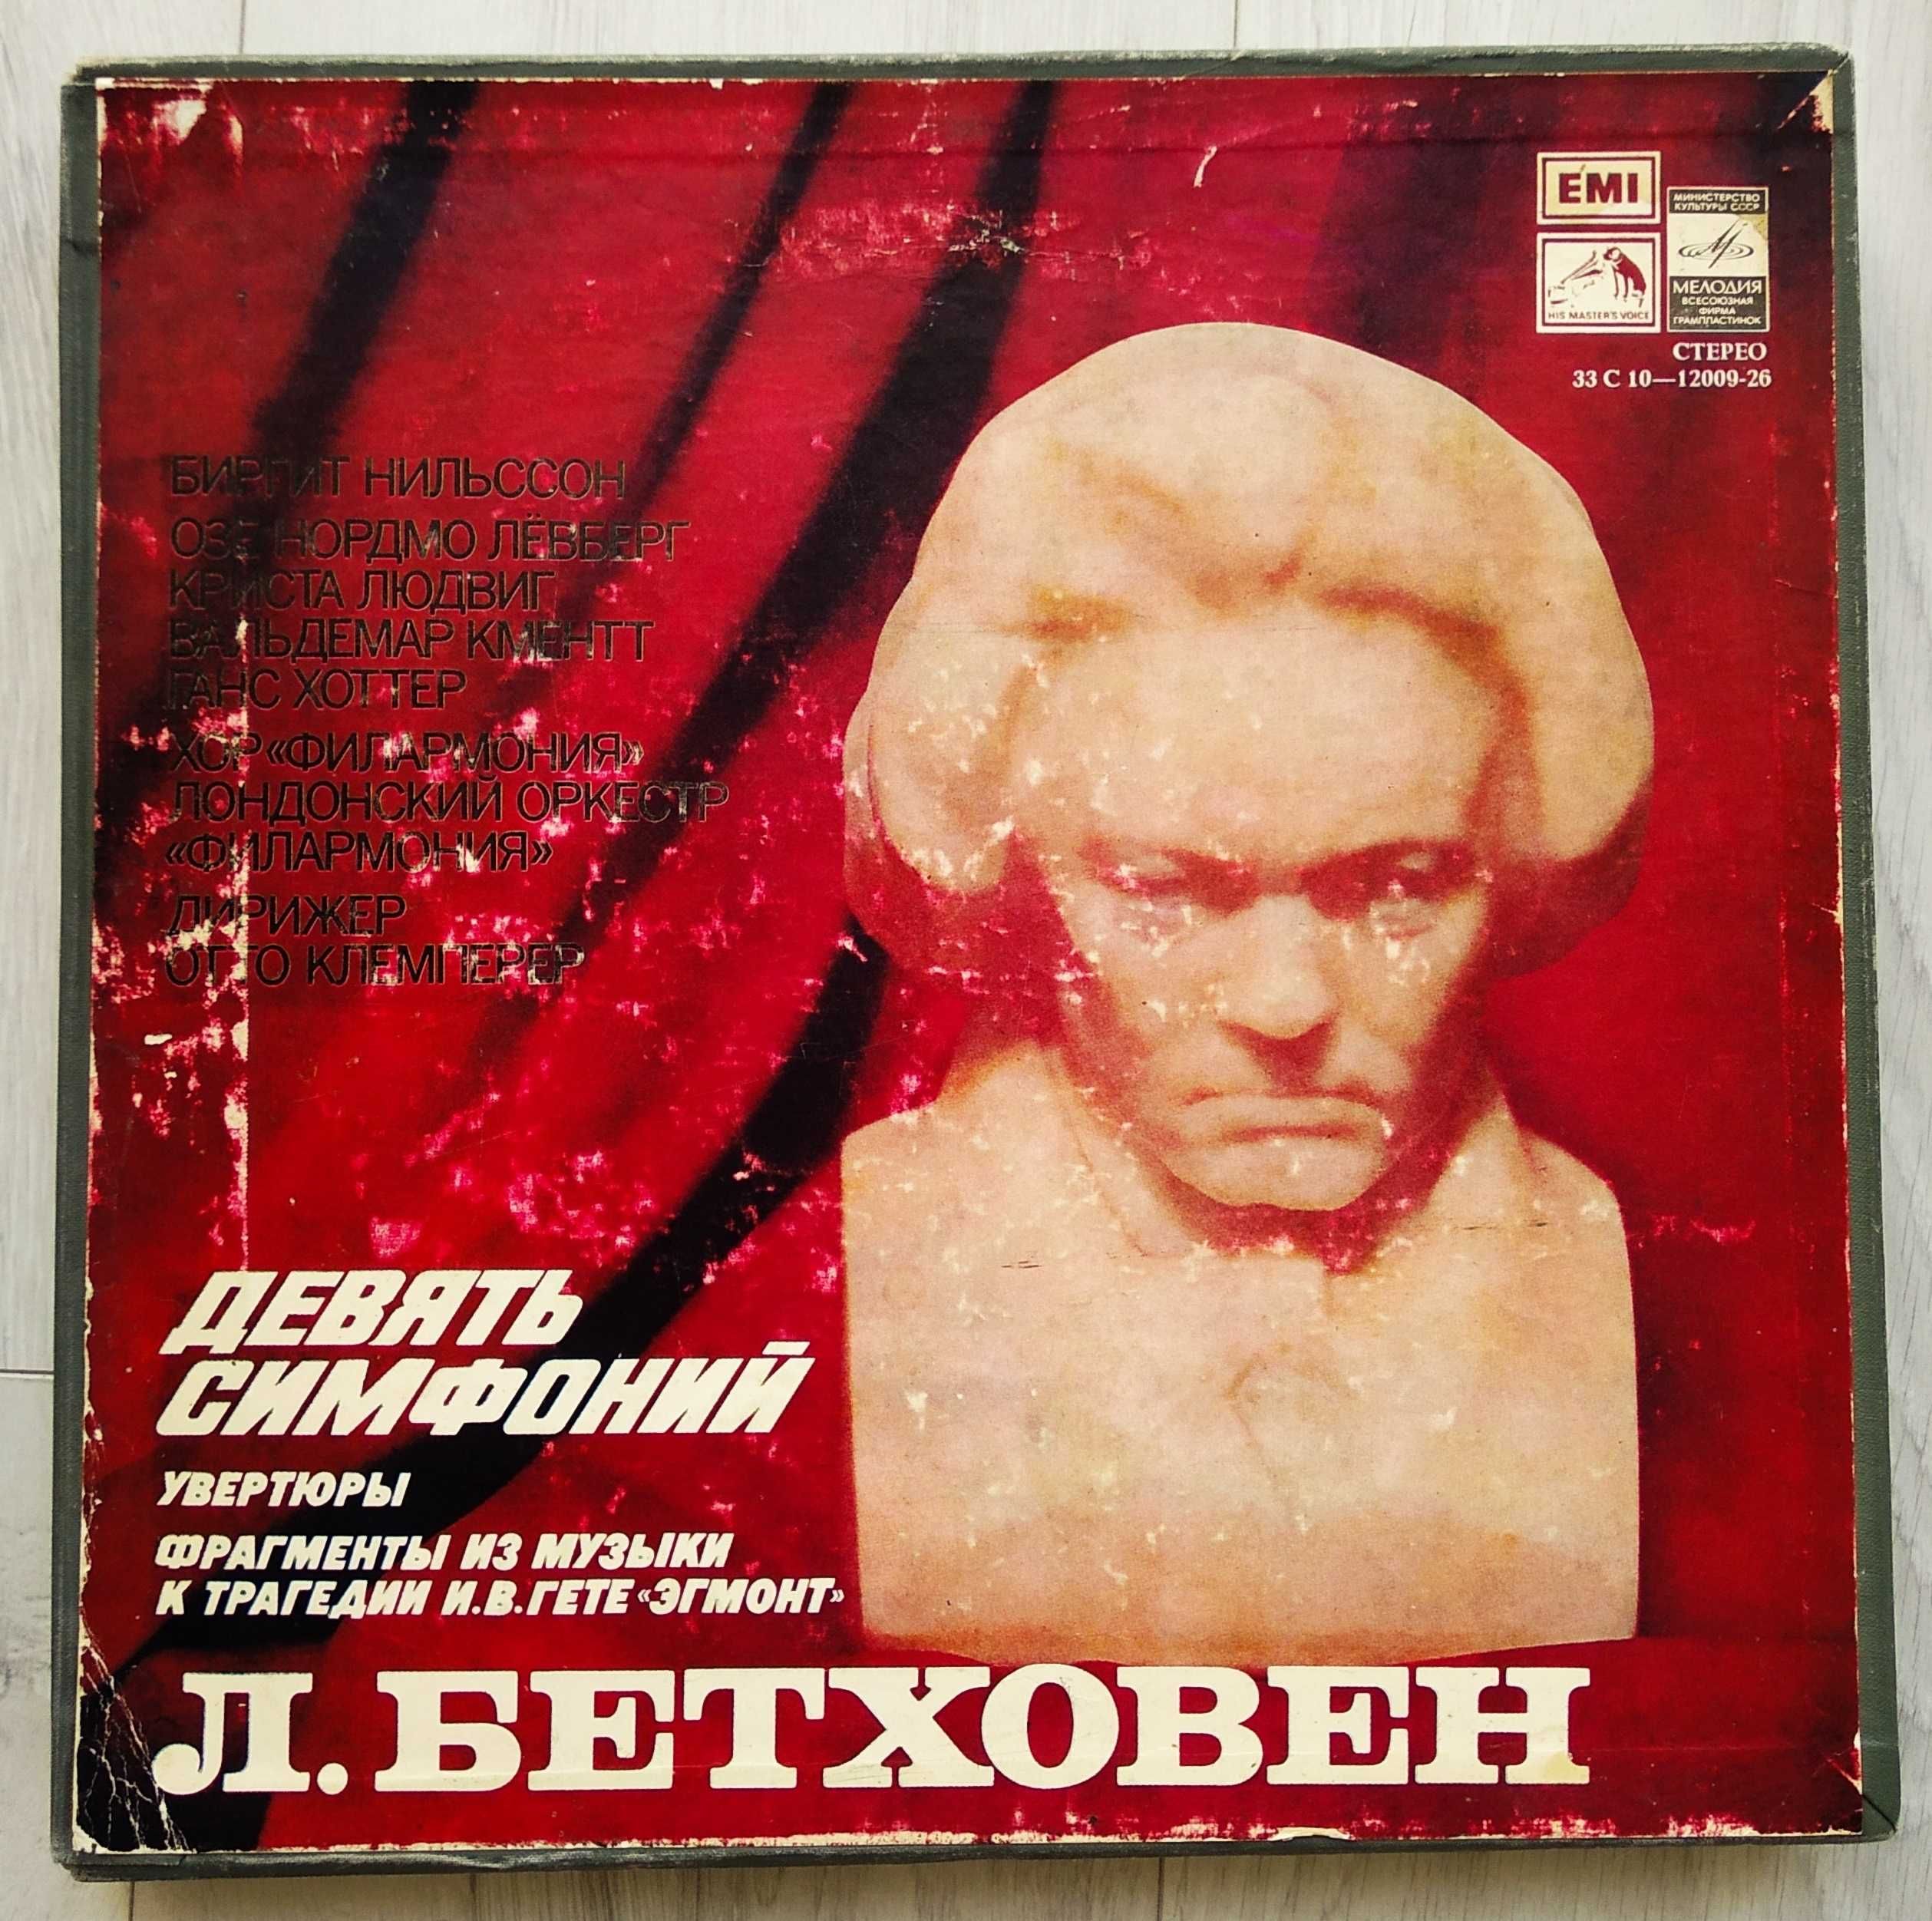 LP Box "Л. Бетховен - Девять симфоний (Мелодия - С10-12009-26)"